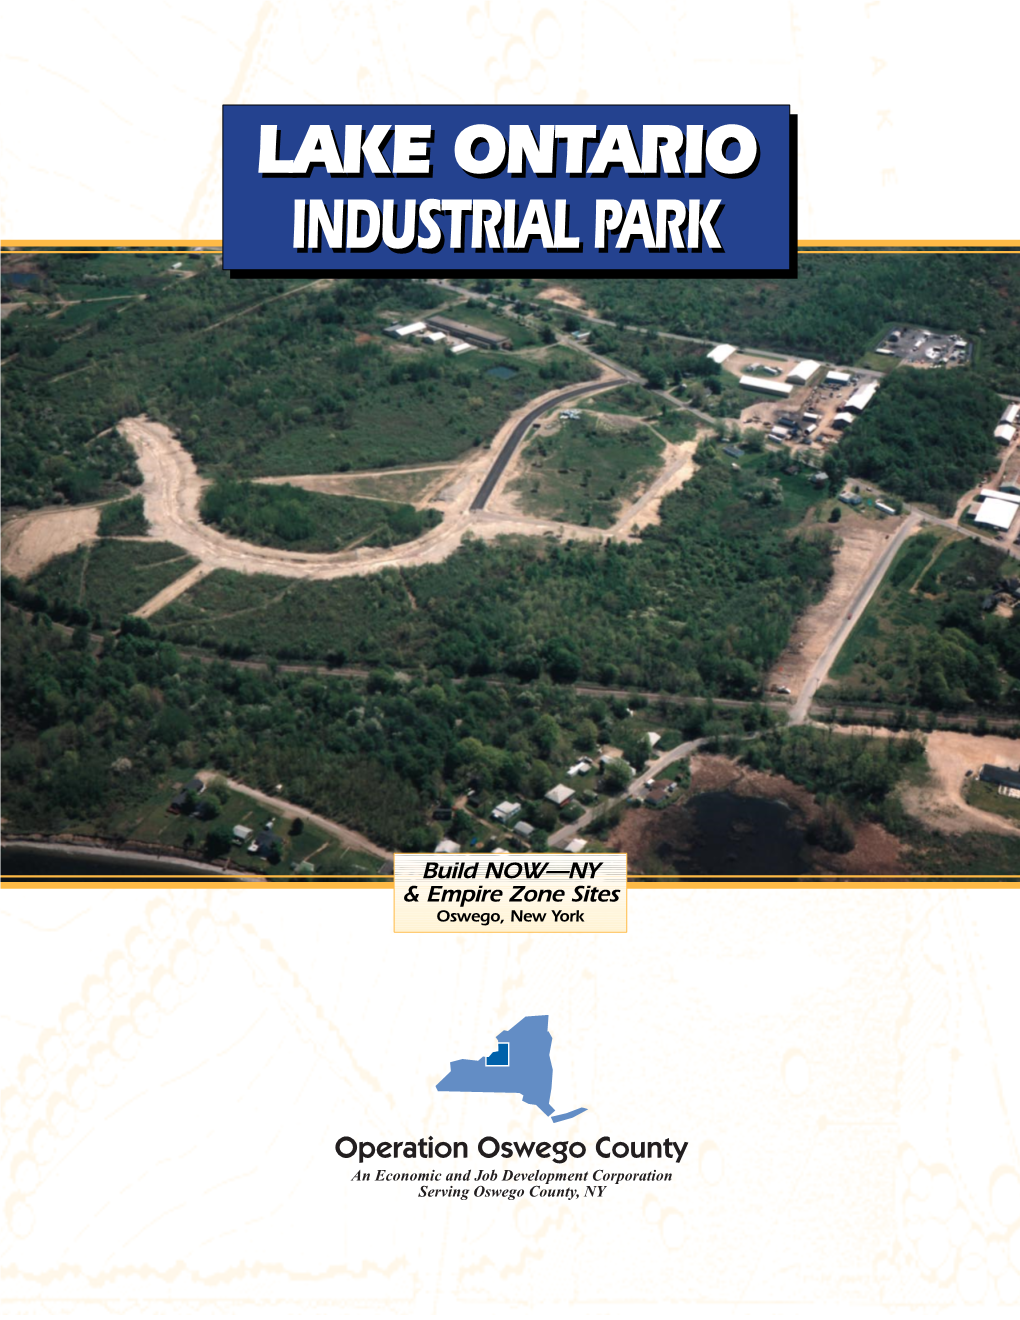 Lake Ontario Industrial Park Brochure